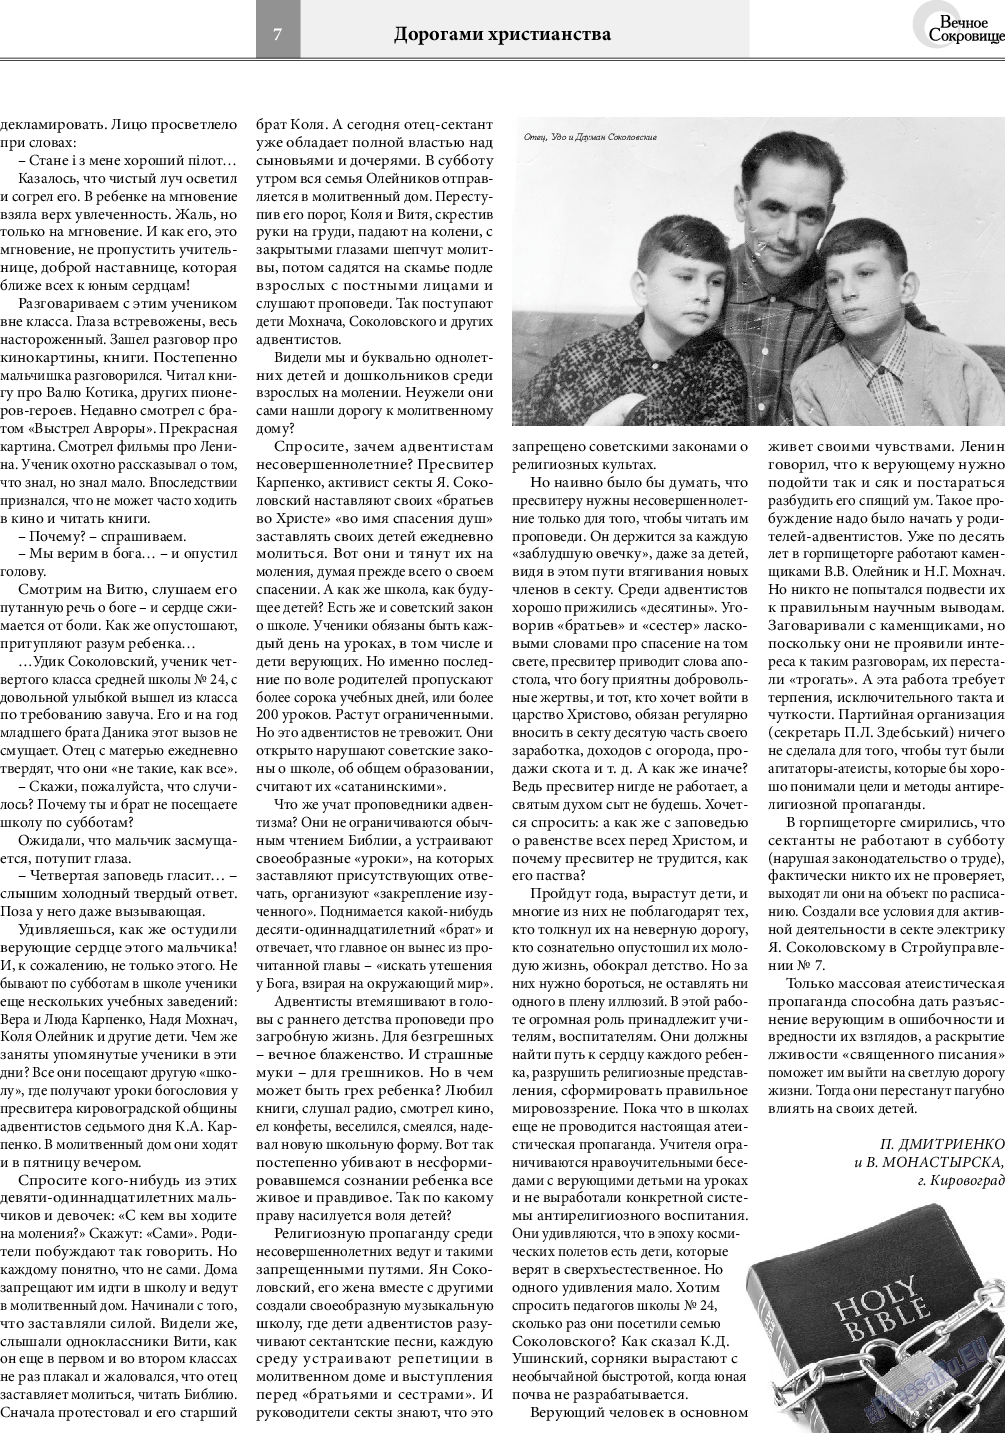 Вечное сокровище, газета. 2020 №2 стр.7